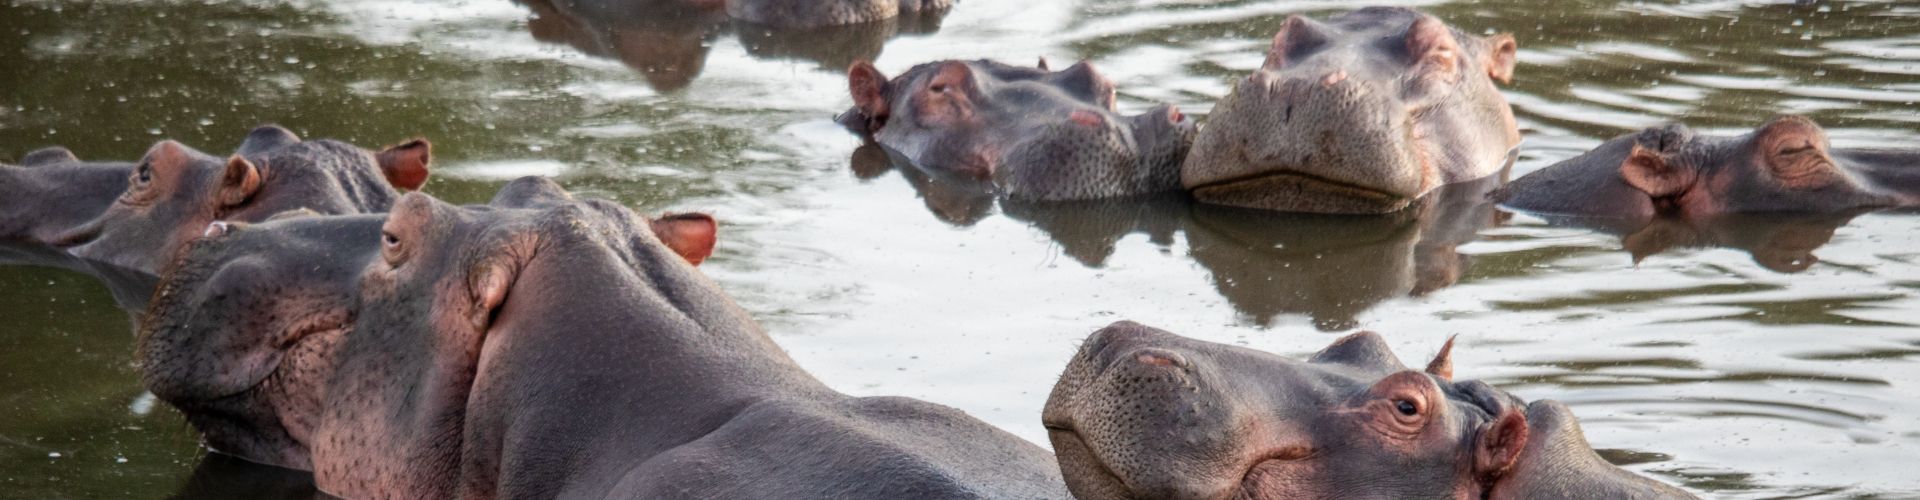 Piscine à hippopotames dans le parc safari du lac Manyara